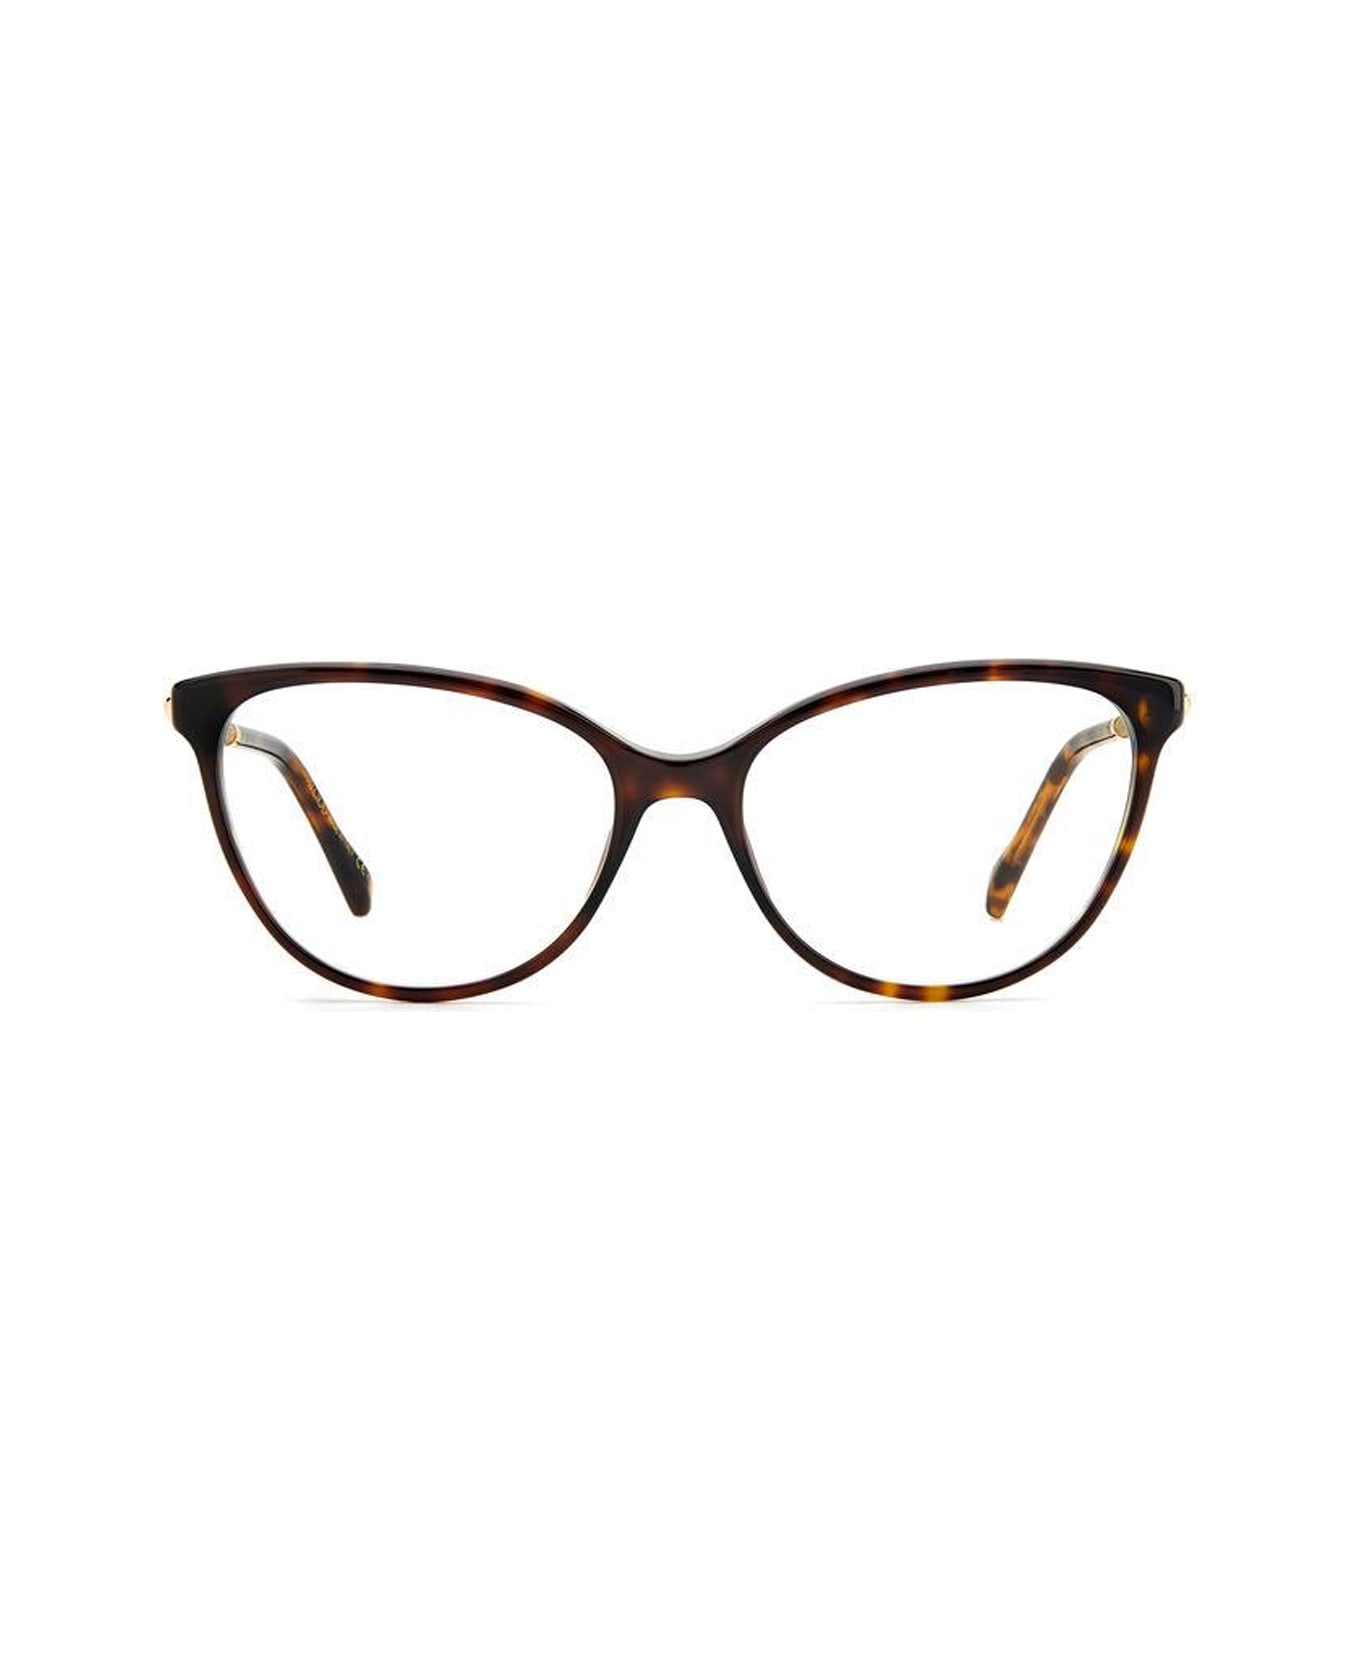 Jimmy Choo Eyewear Jc330 086/16 Havana Glasses - Marrone